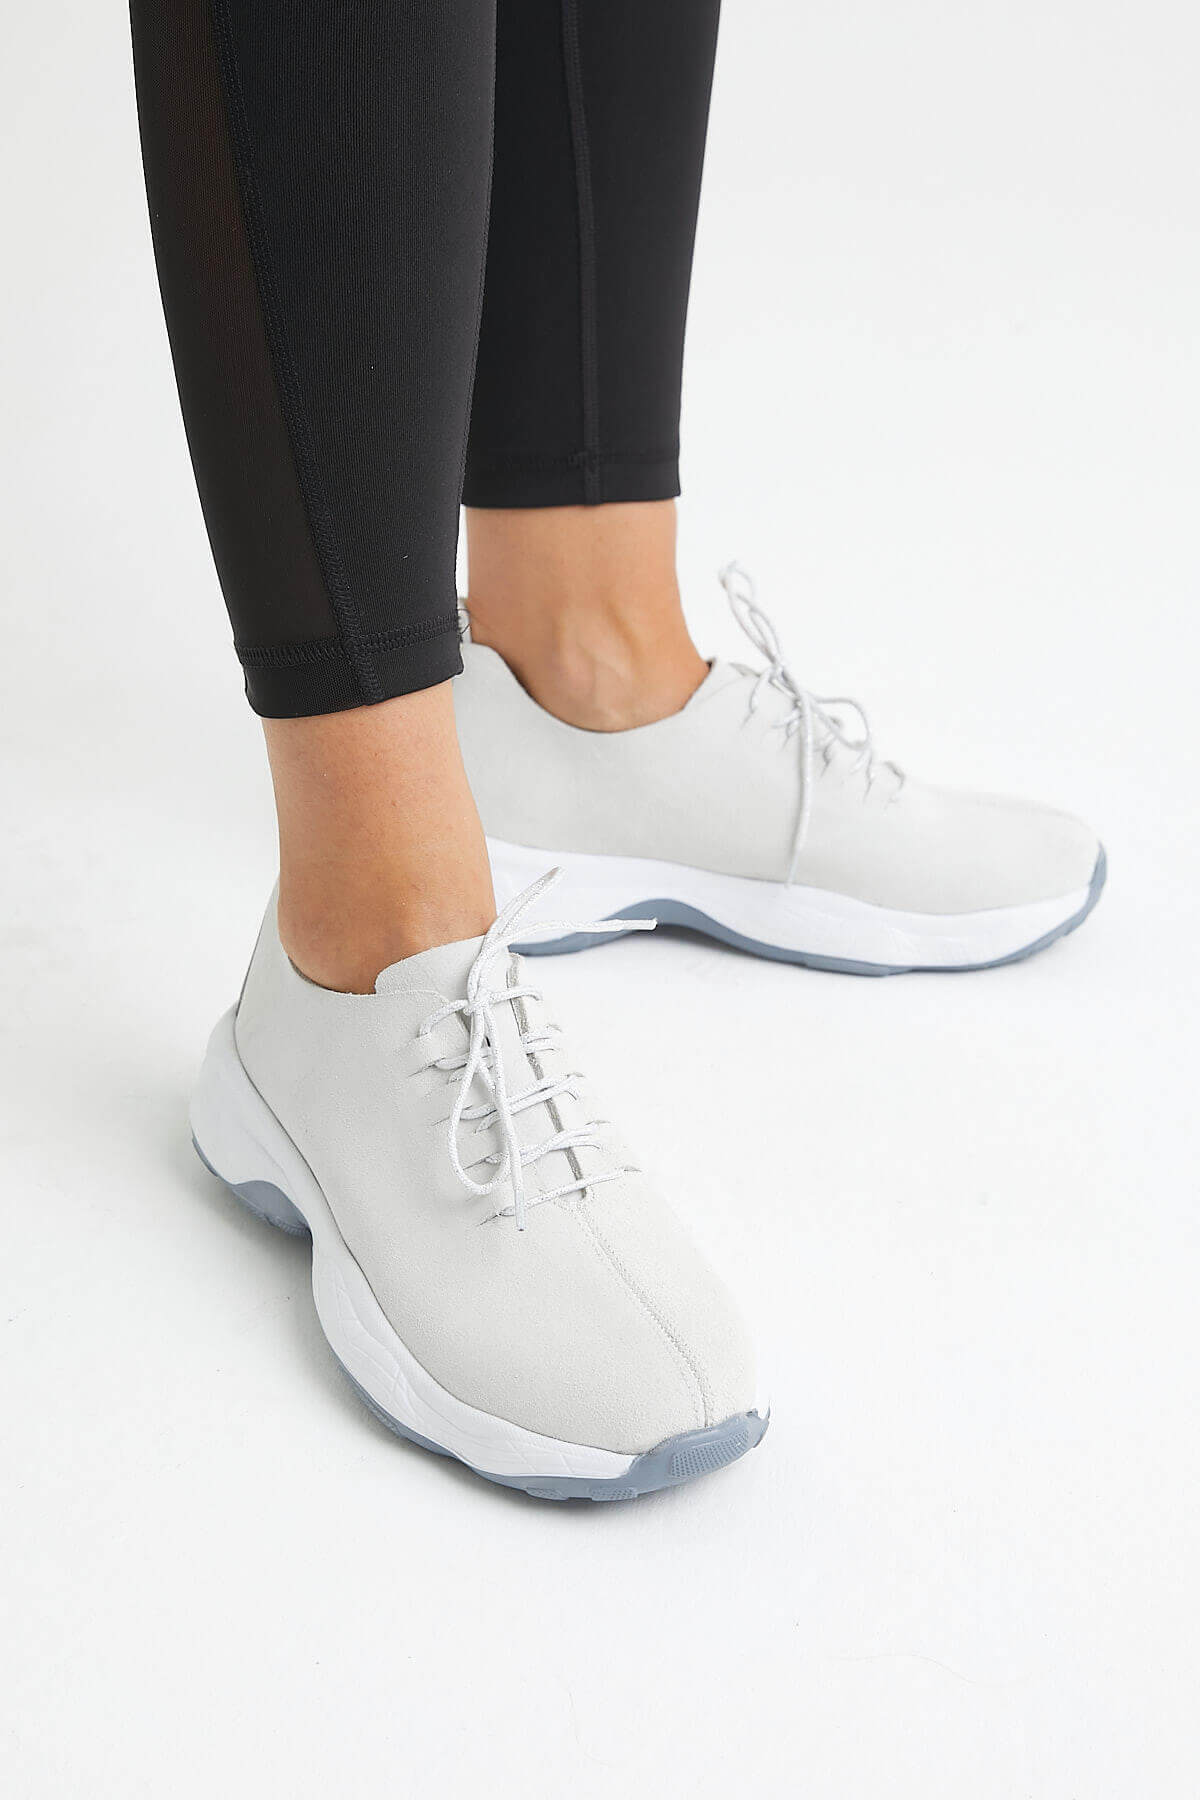 Kadın Deri Sneakers Beyaz 2014201Y